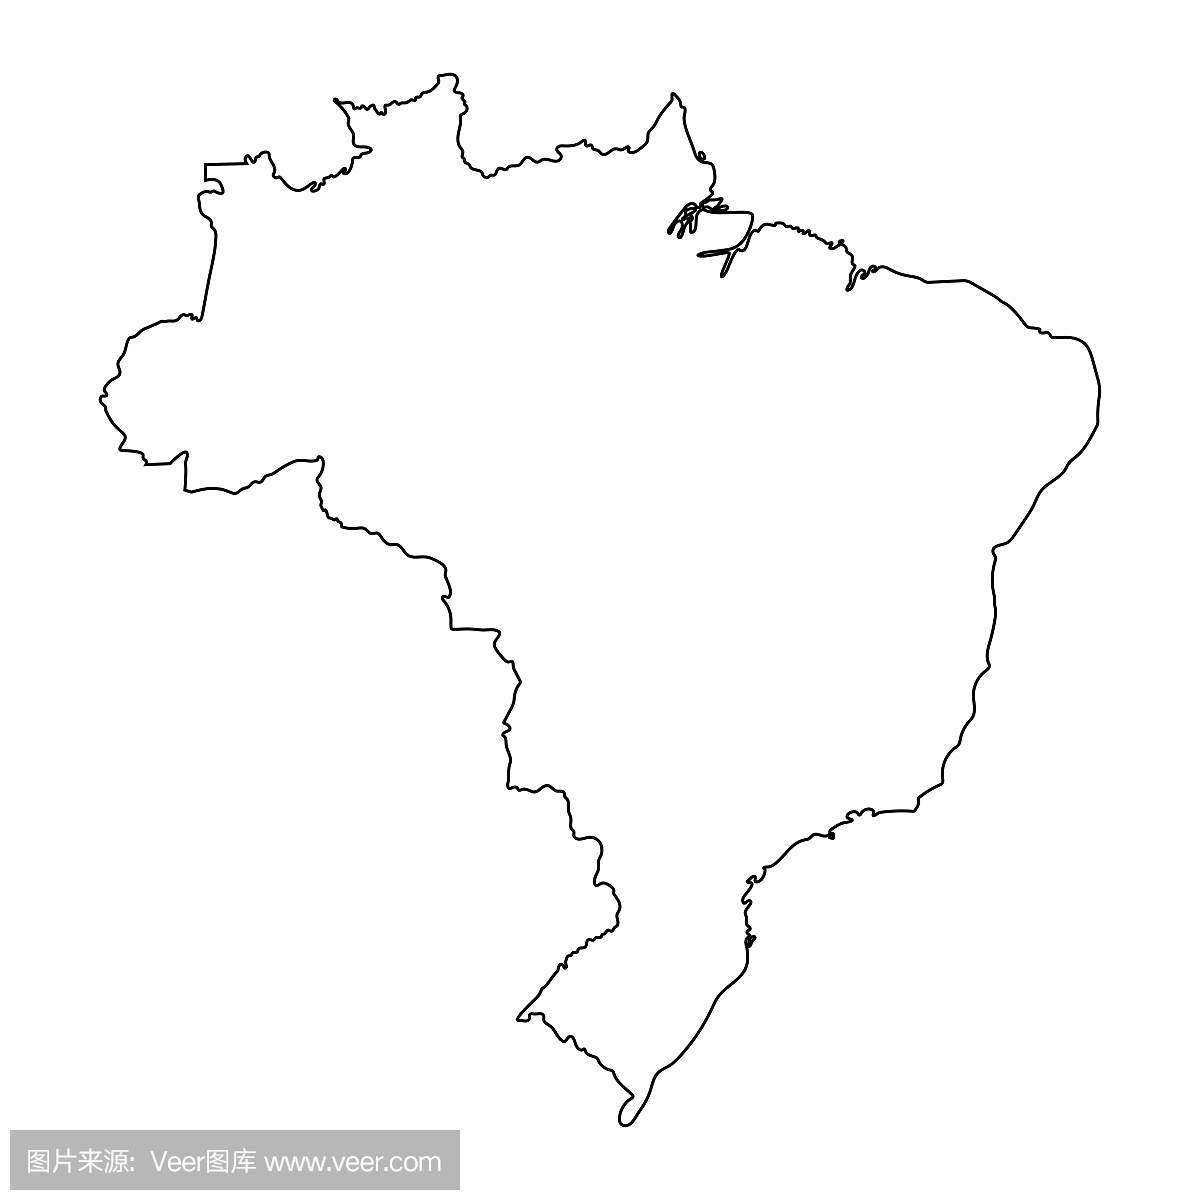 巴西地图轮廓图形徒手画在白色背景上。矢量图